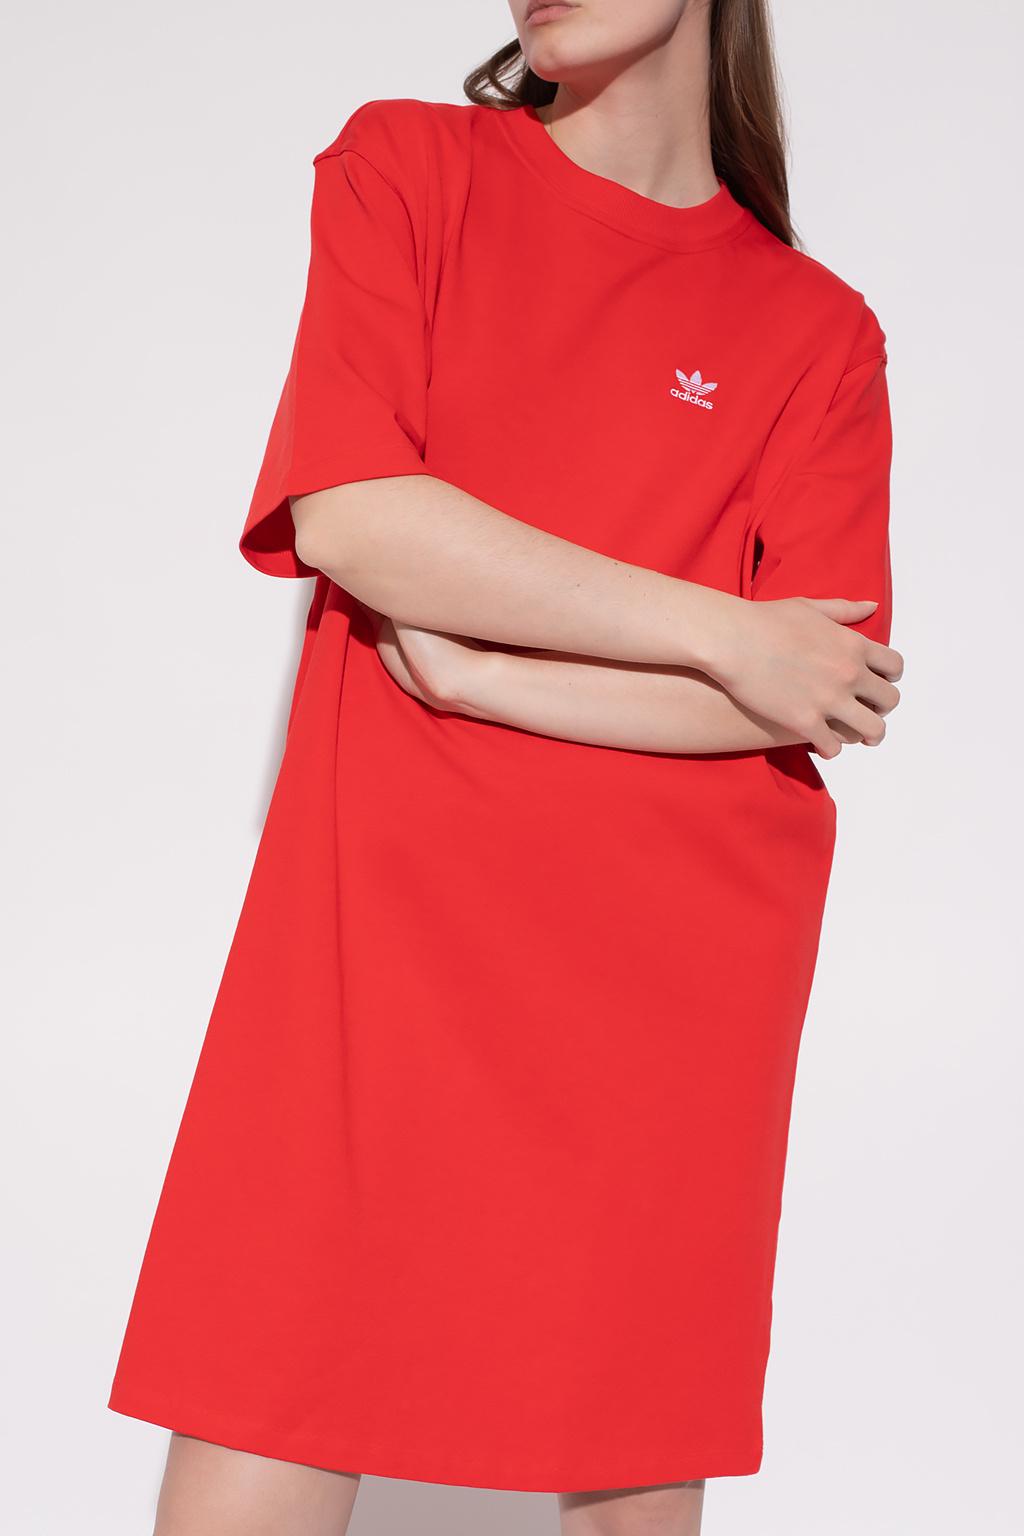 beskæftigelse tragt kalk adidas Originals Dress With Logo in Red | Lyst